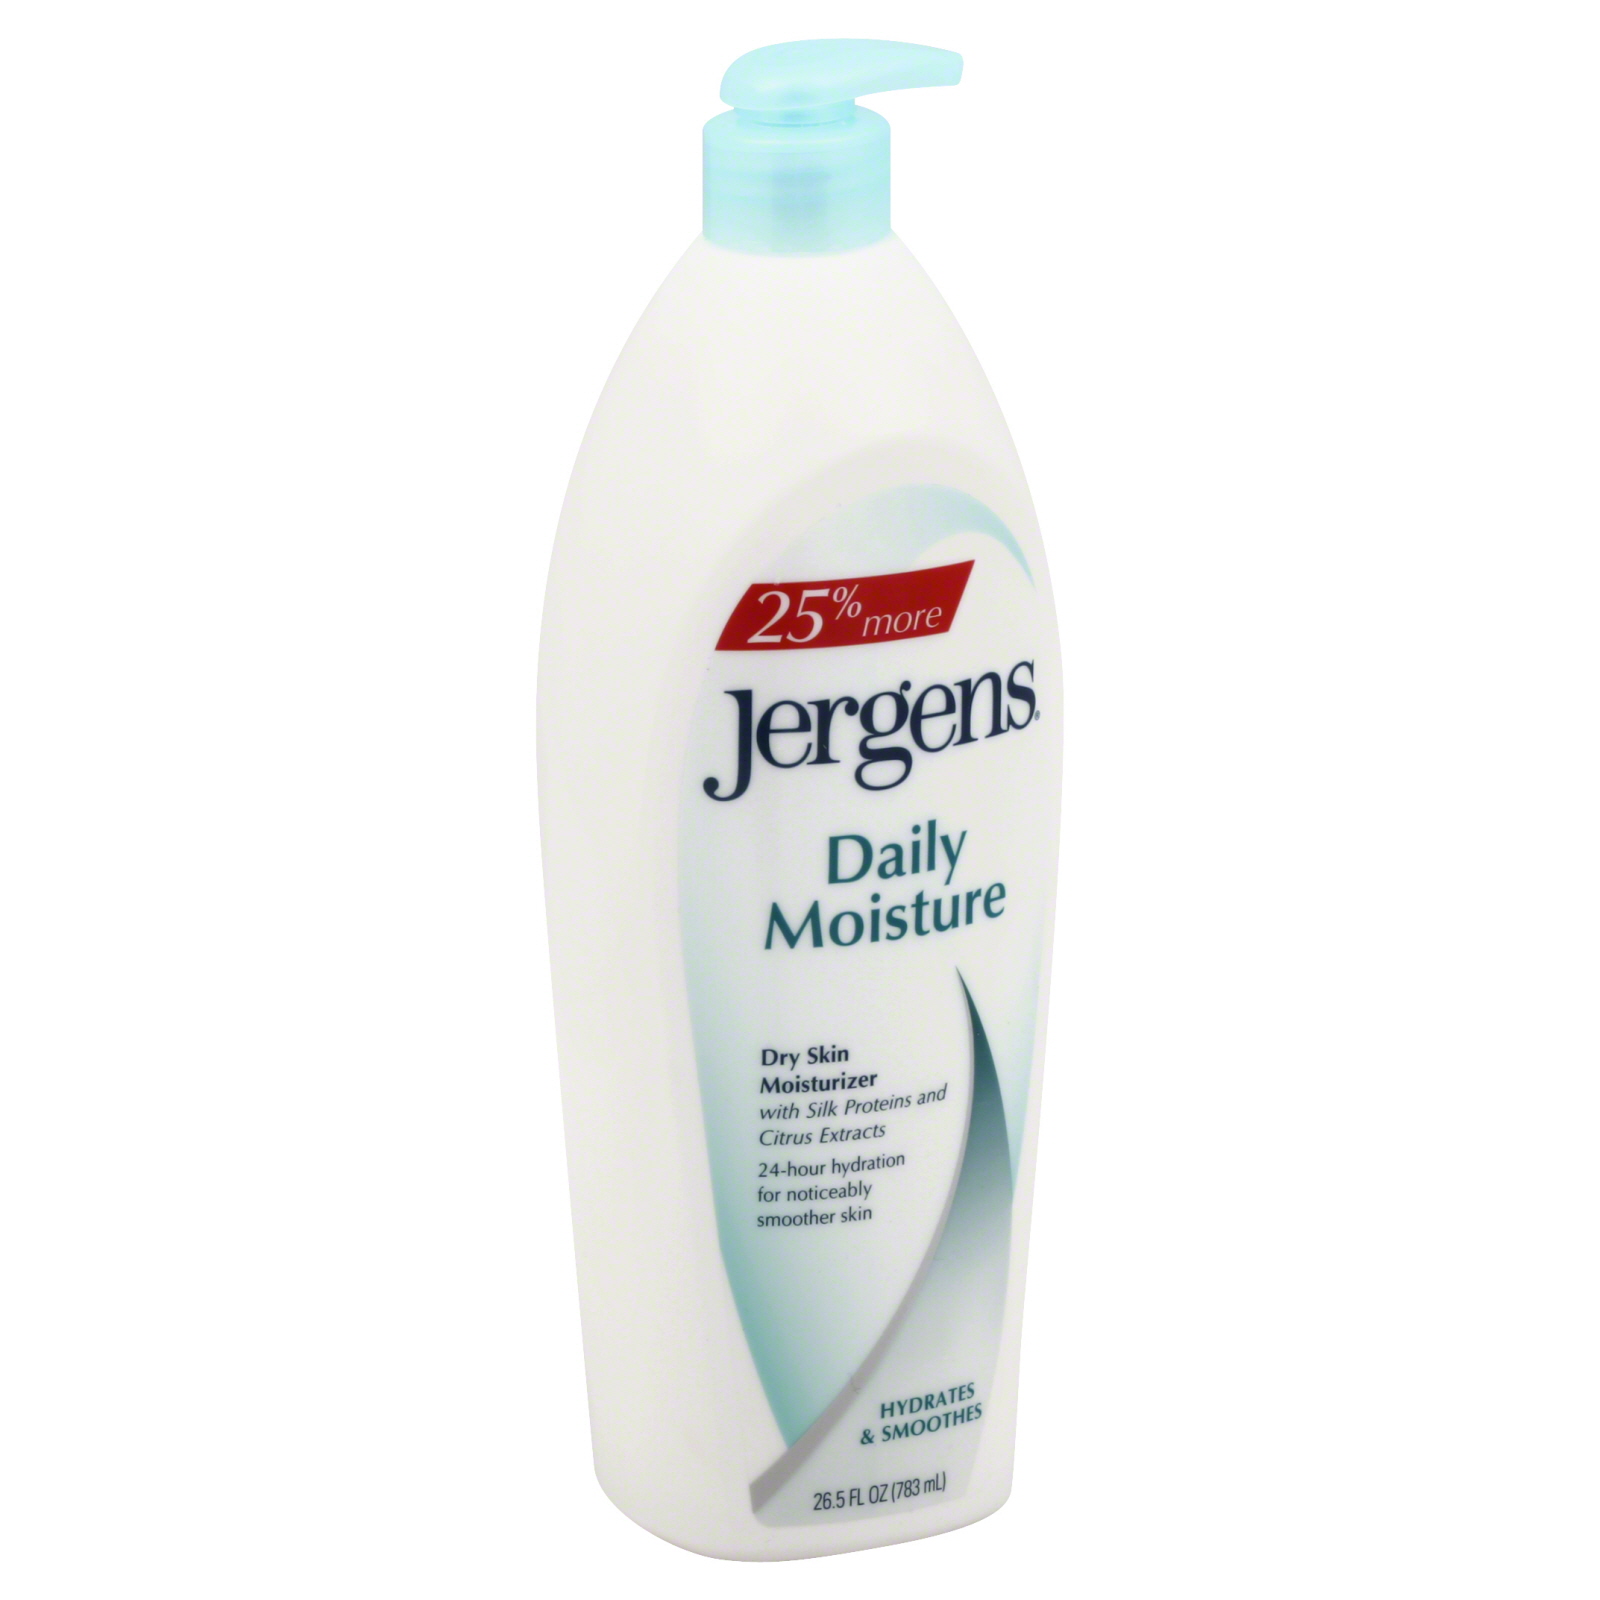 Jergens Moisturizer, Dry Skin, Daily Moisture 26.5 fl oz (783 ml)